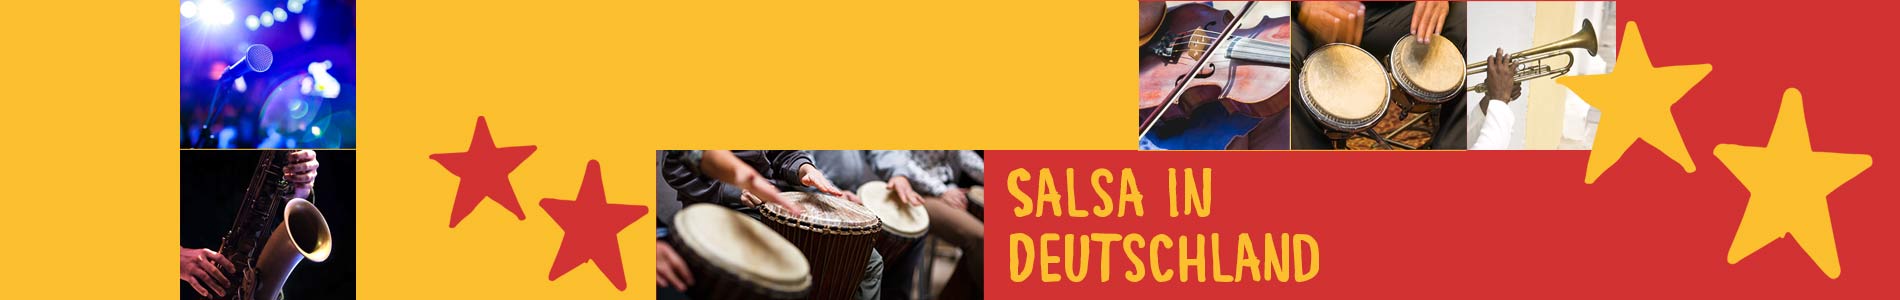 Salsa in Cölbe – Salsa lernen und tanzen, Tanzkurse, Partys, Veranstaltungen